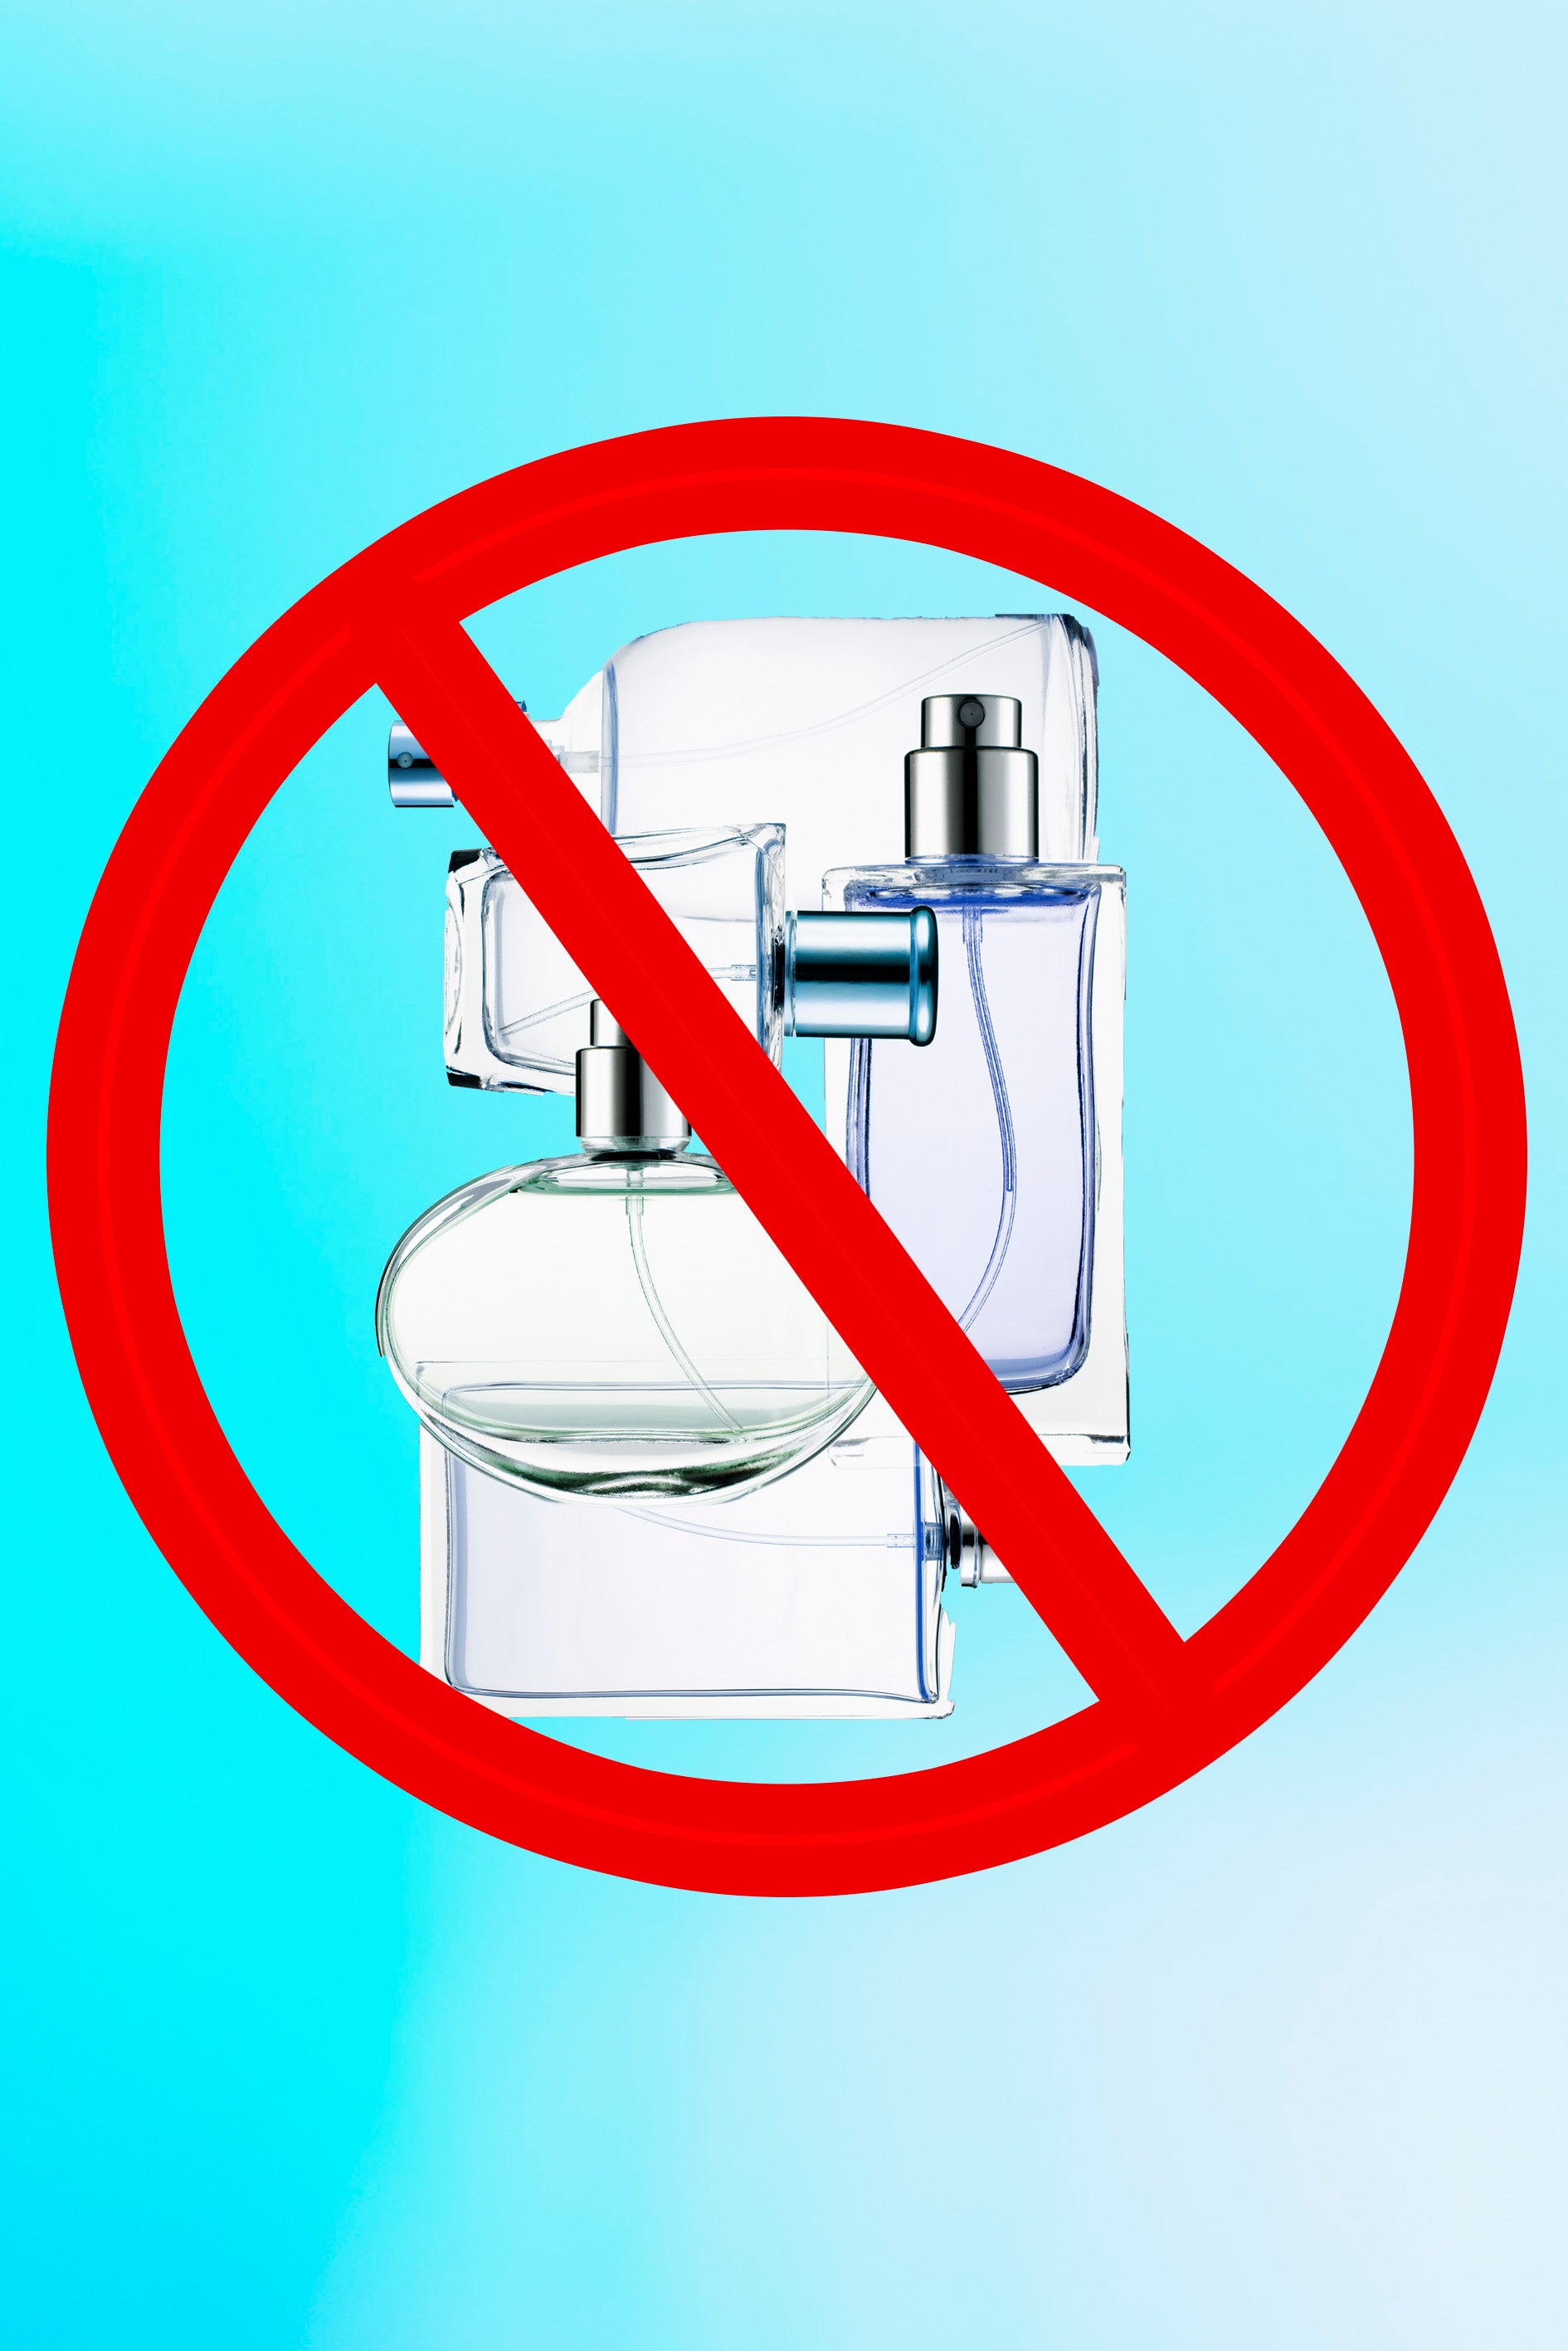 Perfumania Restocks Donald Trump Fragrances Despite Previous Ban
